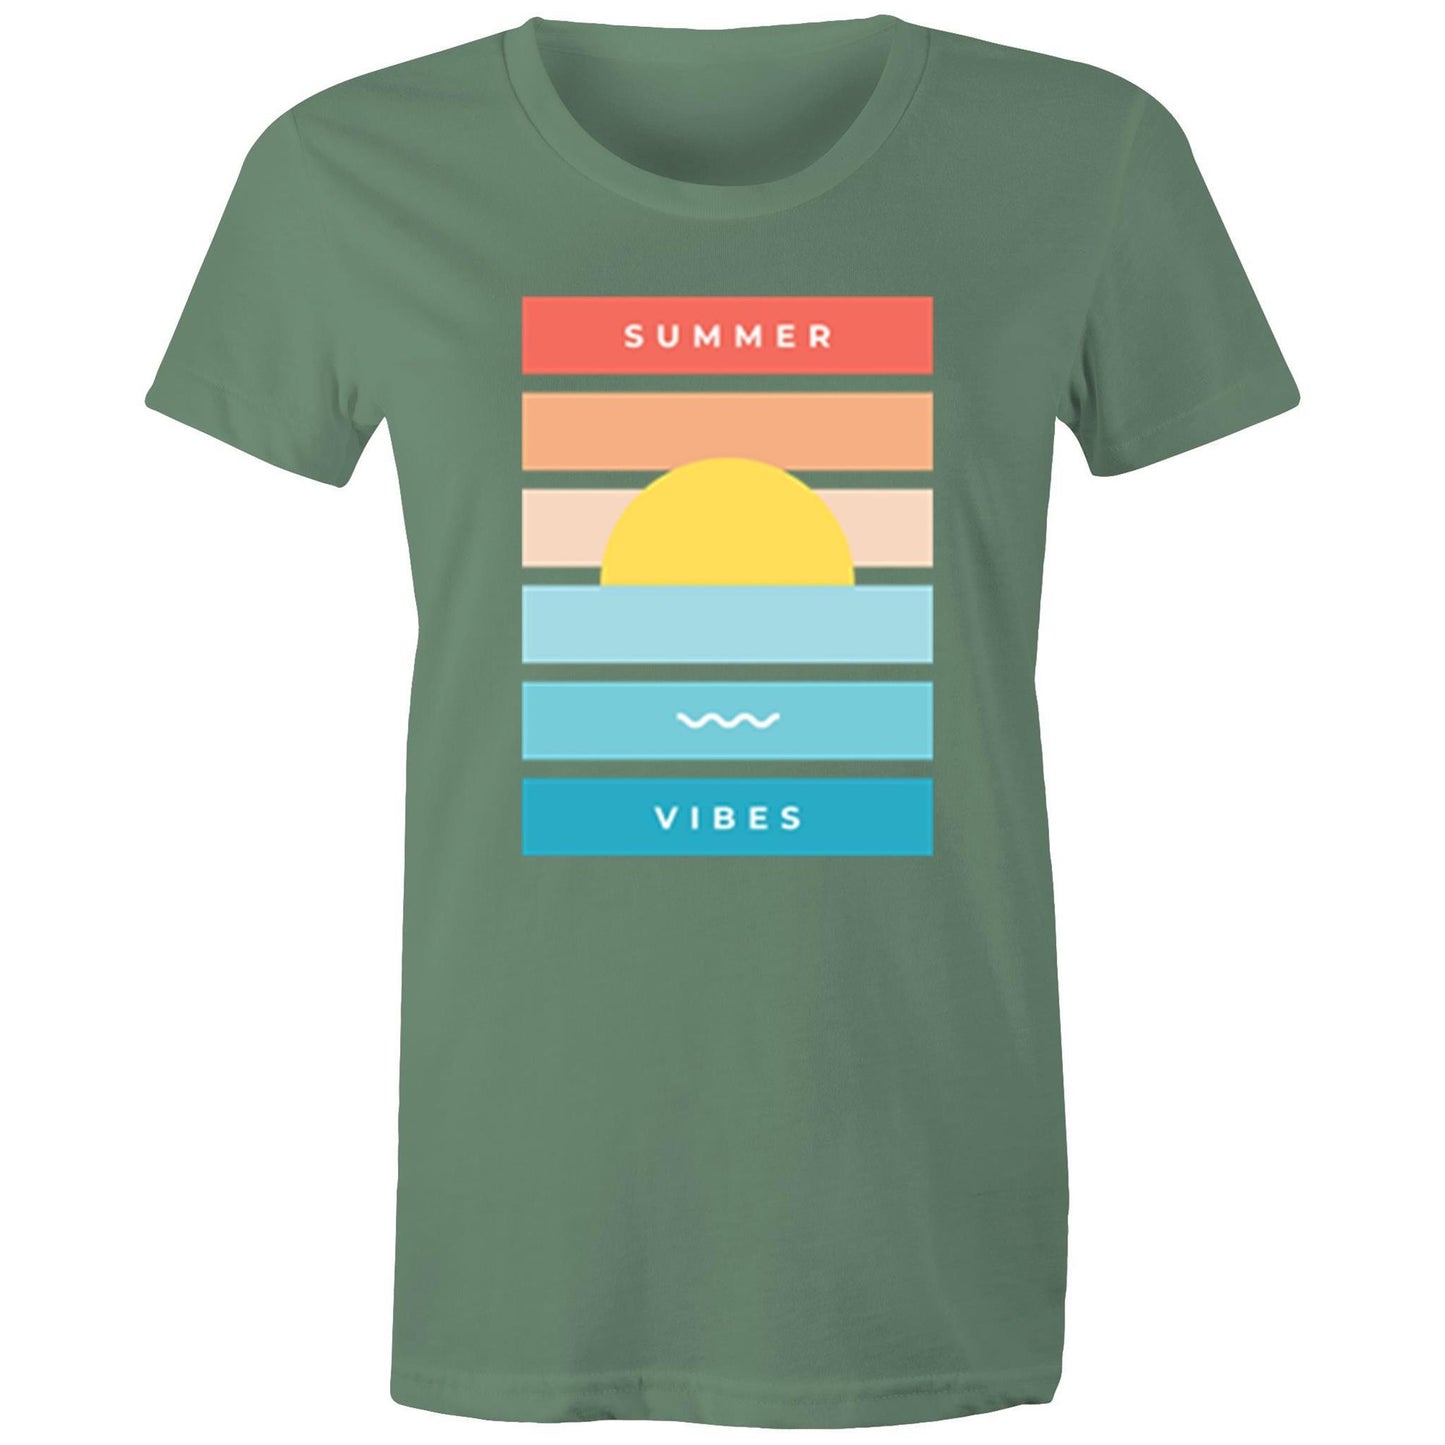 Summer Vibes - Women's T-shirt Sage Womens T-shirt Retro Summer Womens